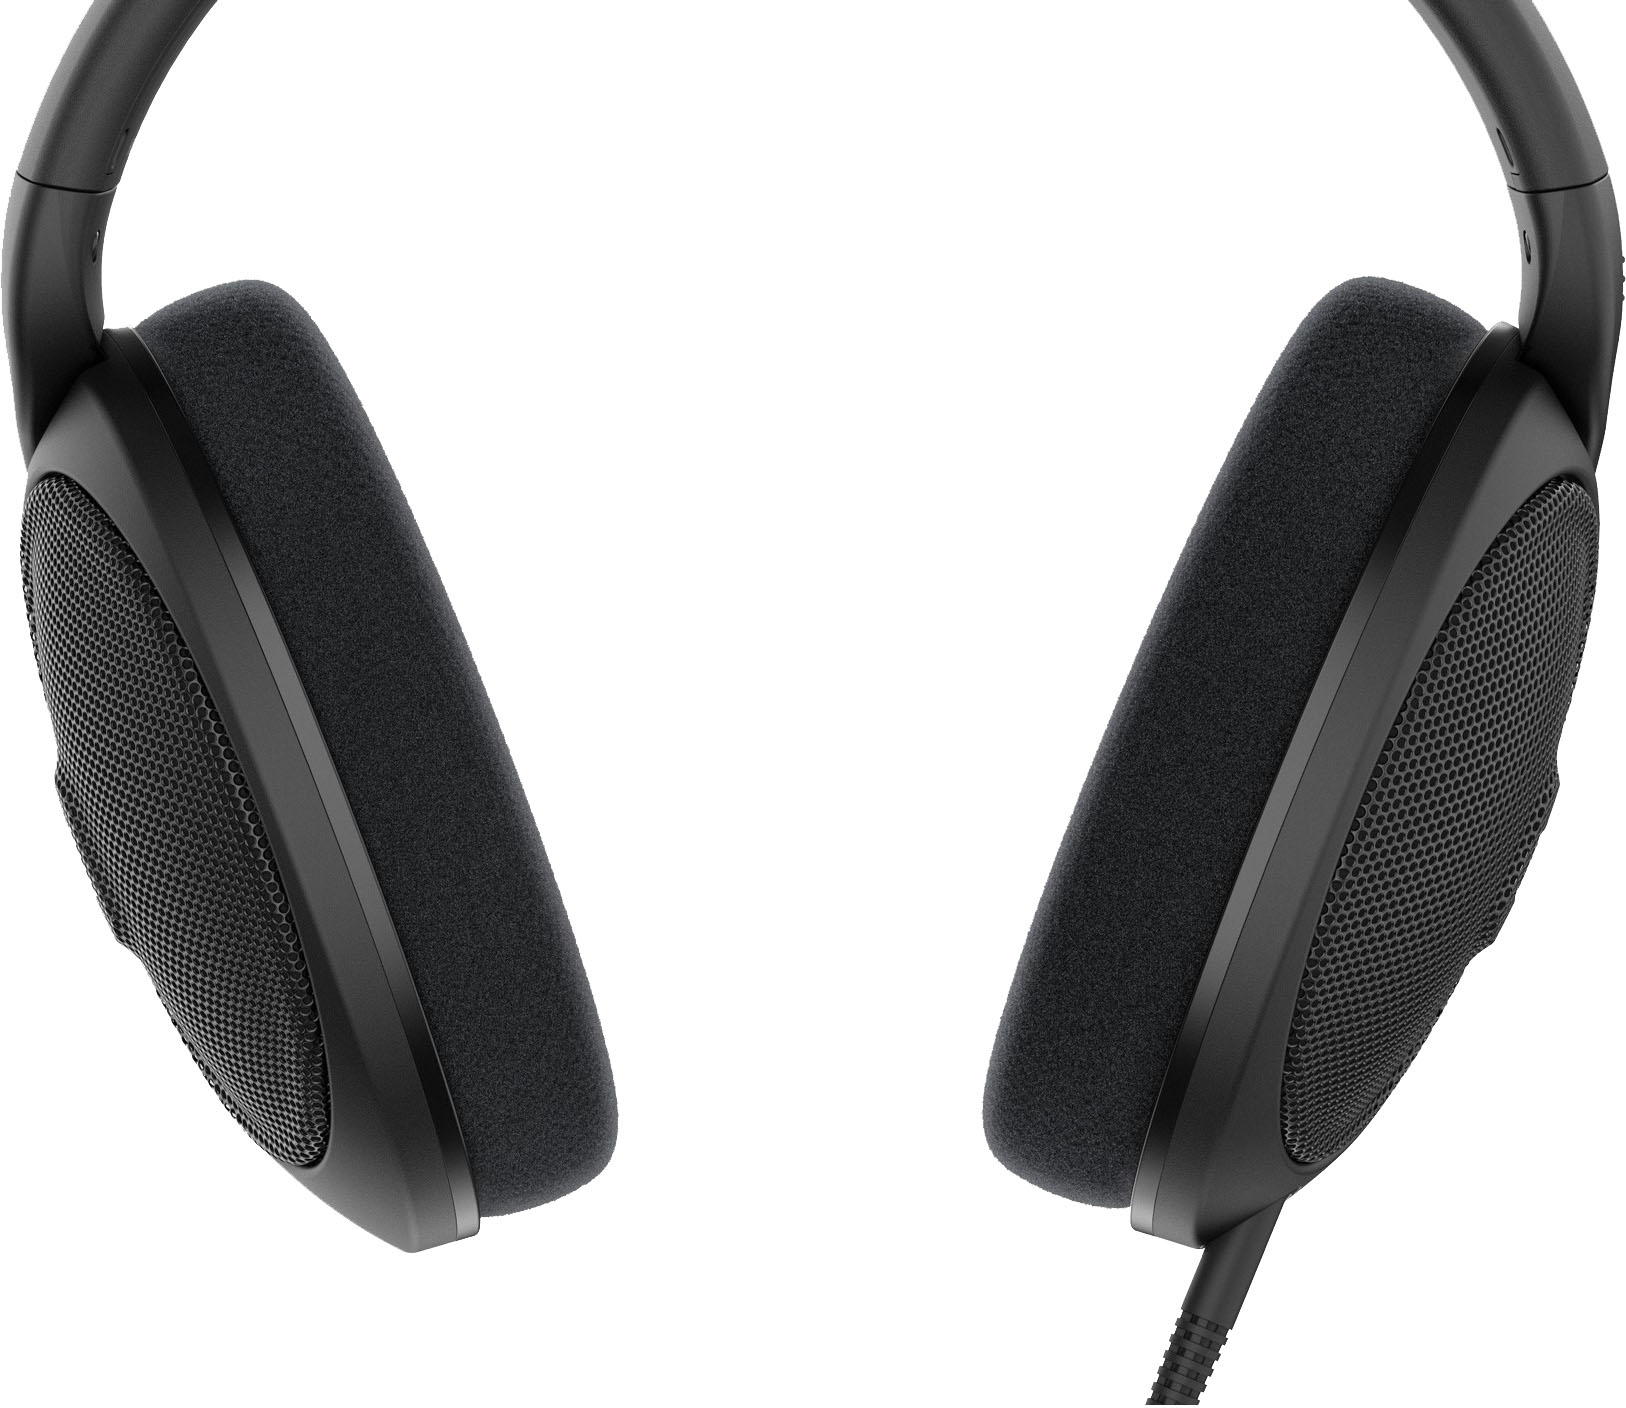  Sennheiser Consumer Audio HD 560 S Over-The-Ear